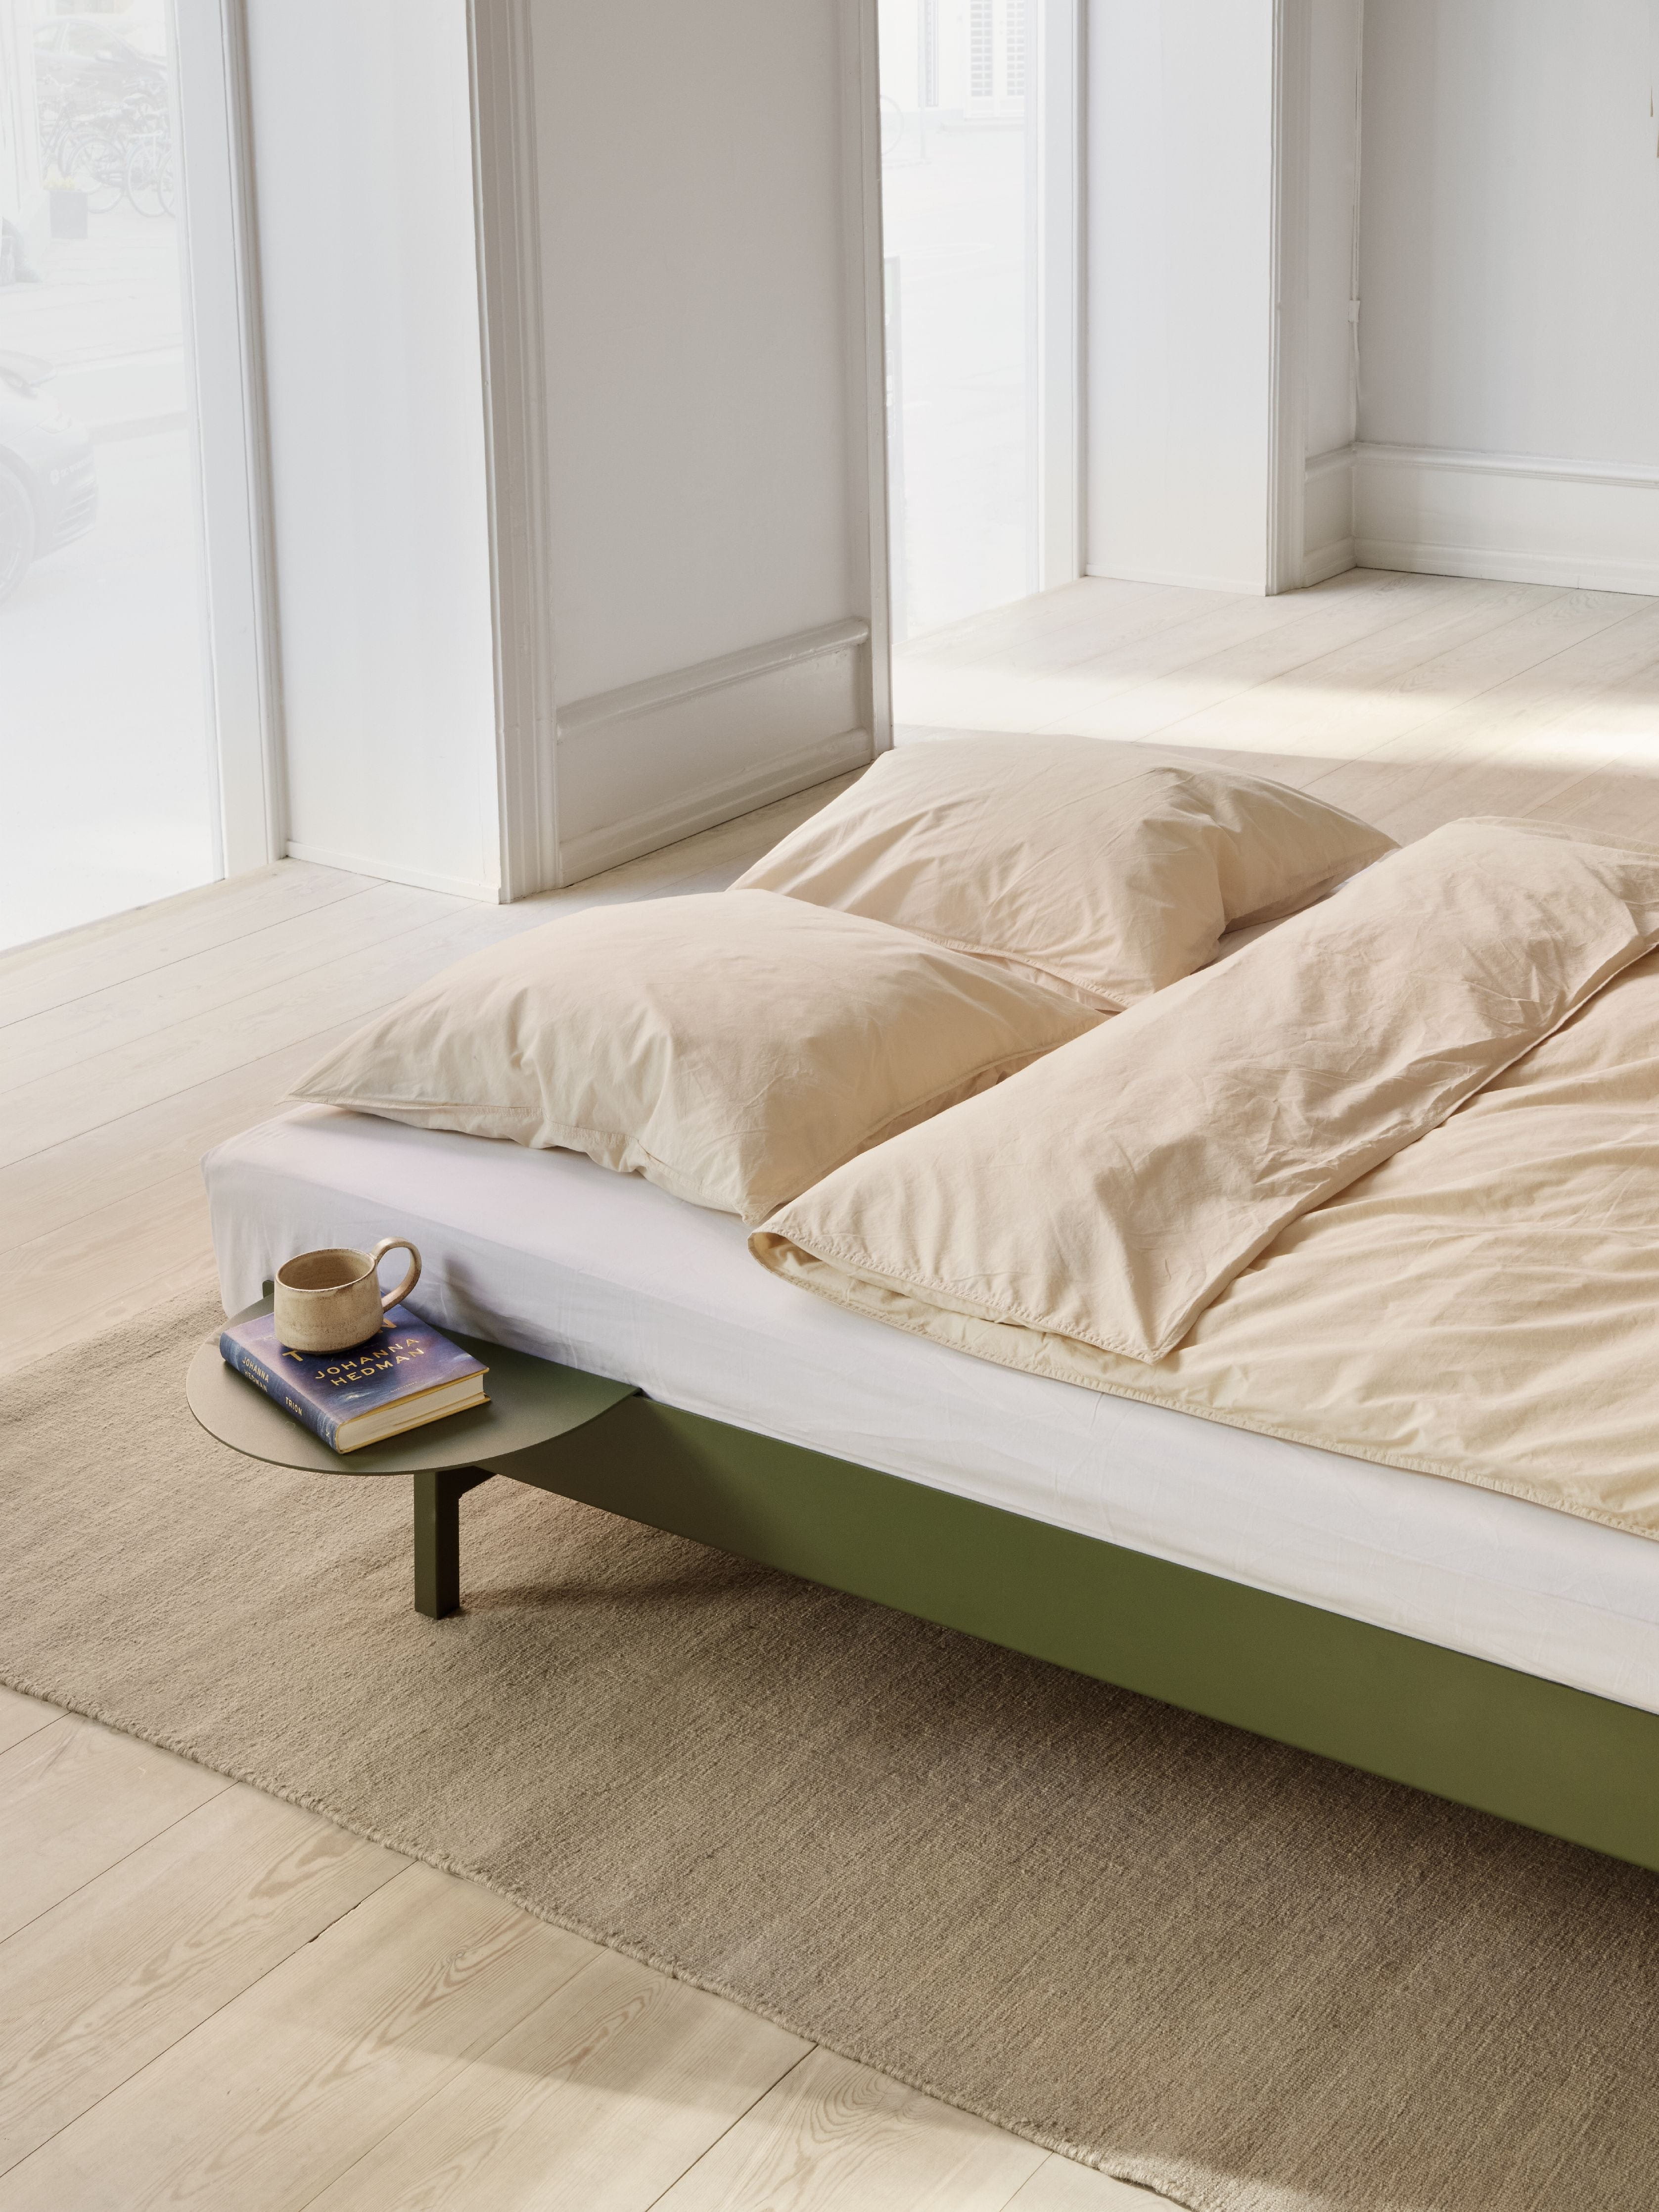 Moebe nosičkový stůl pro postel, borovice zelená